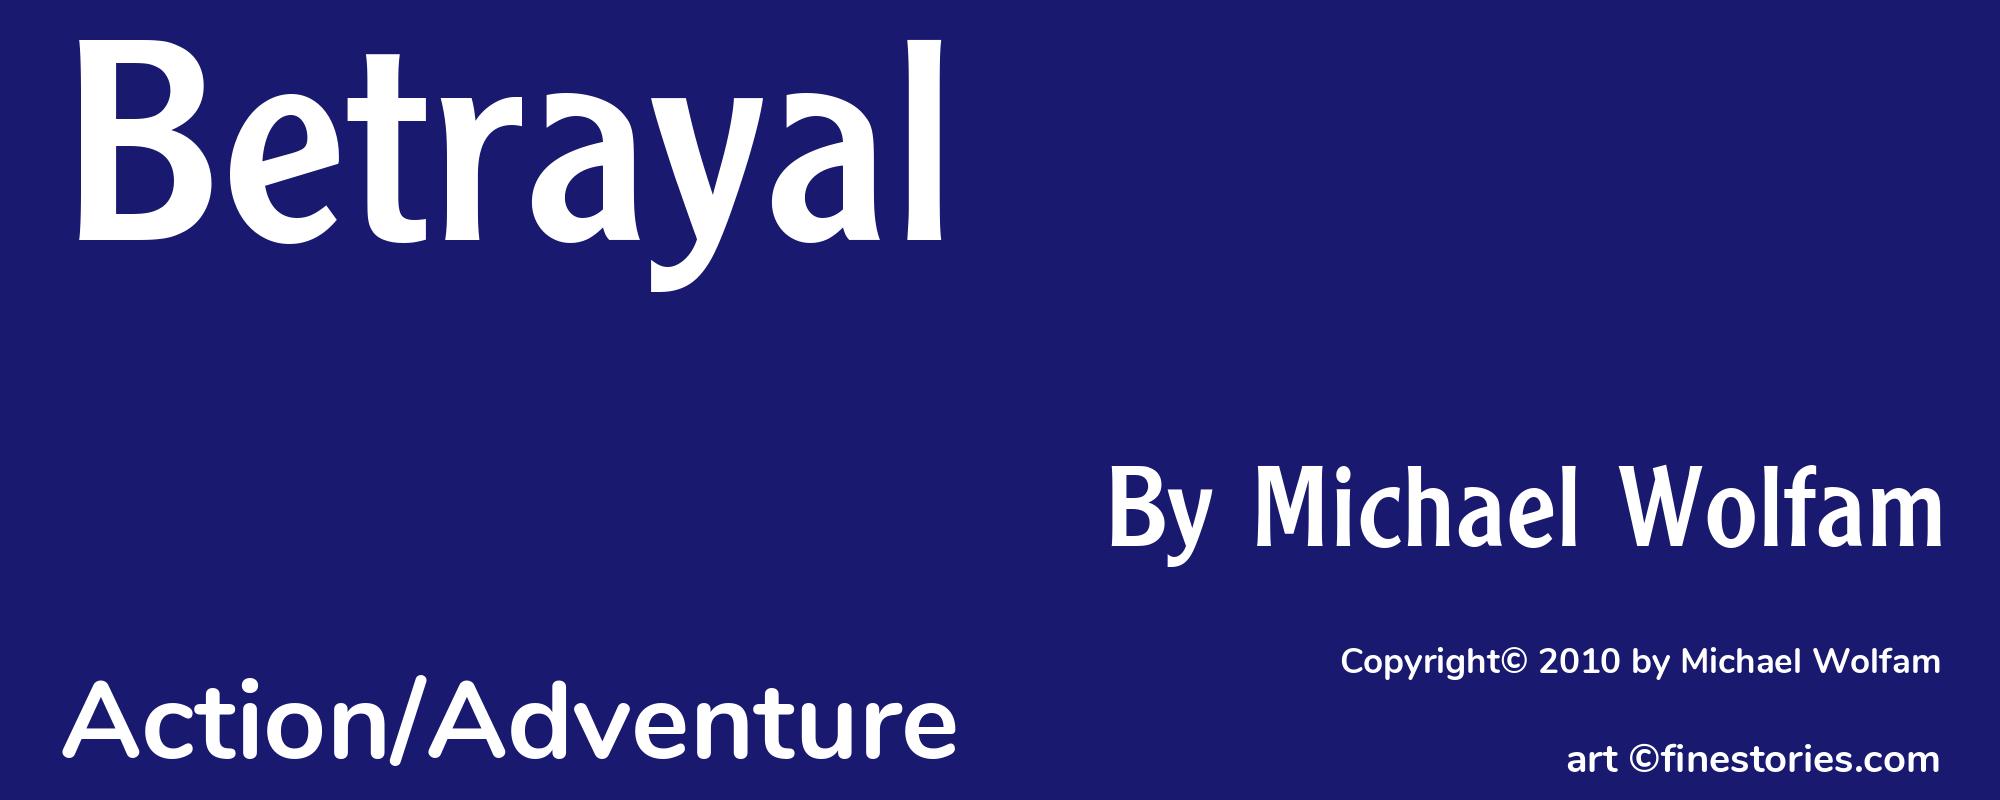 Betrayal - Cover